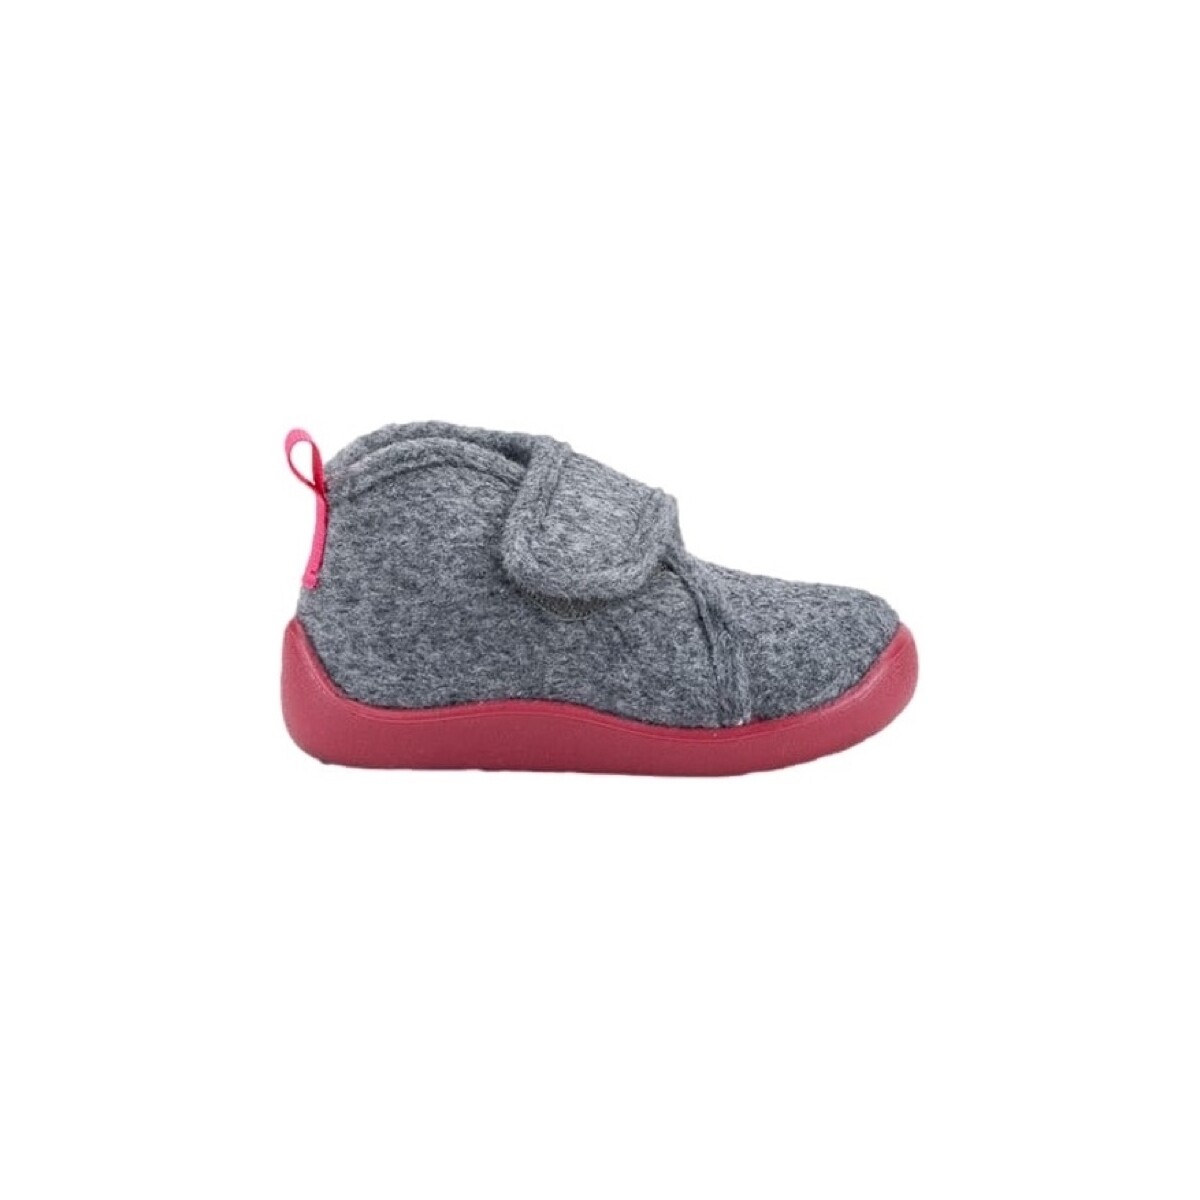 Παπούτσια Παιδί Σοσονάκια μωρού IGOR Comfi Colores - Gris/Frambuesa Ροζ